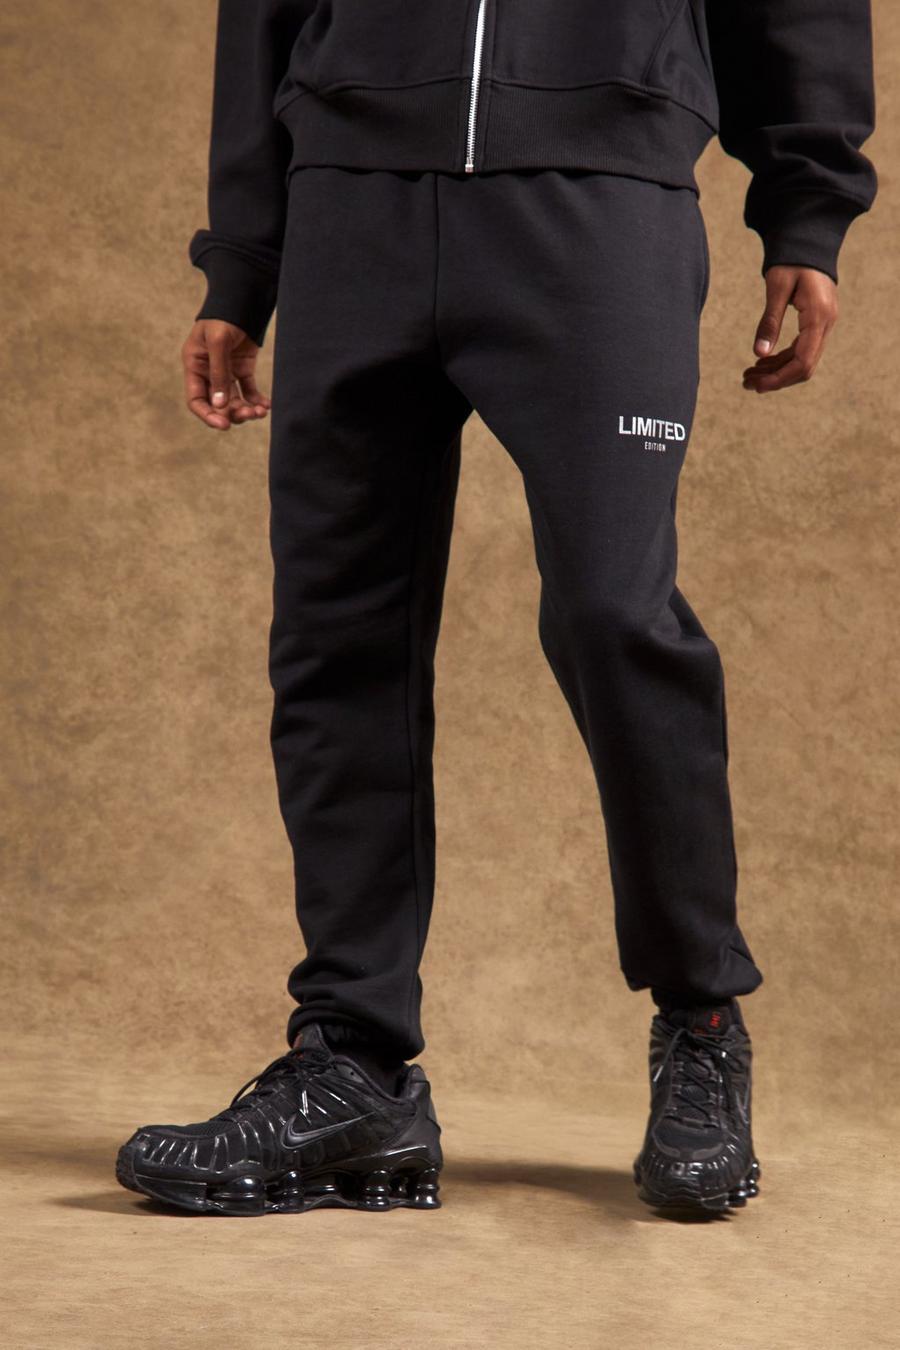 שחור negro מכנסי טרנינג עבים בגזרה רגילה עם כיתוב Limited